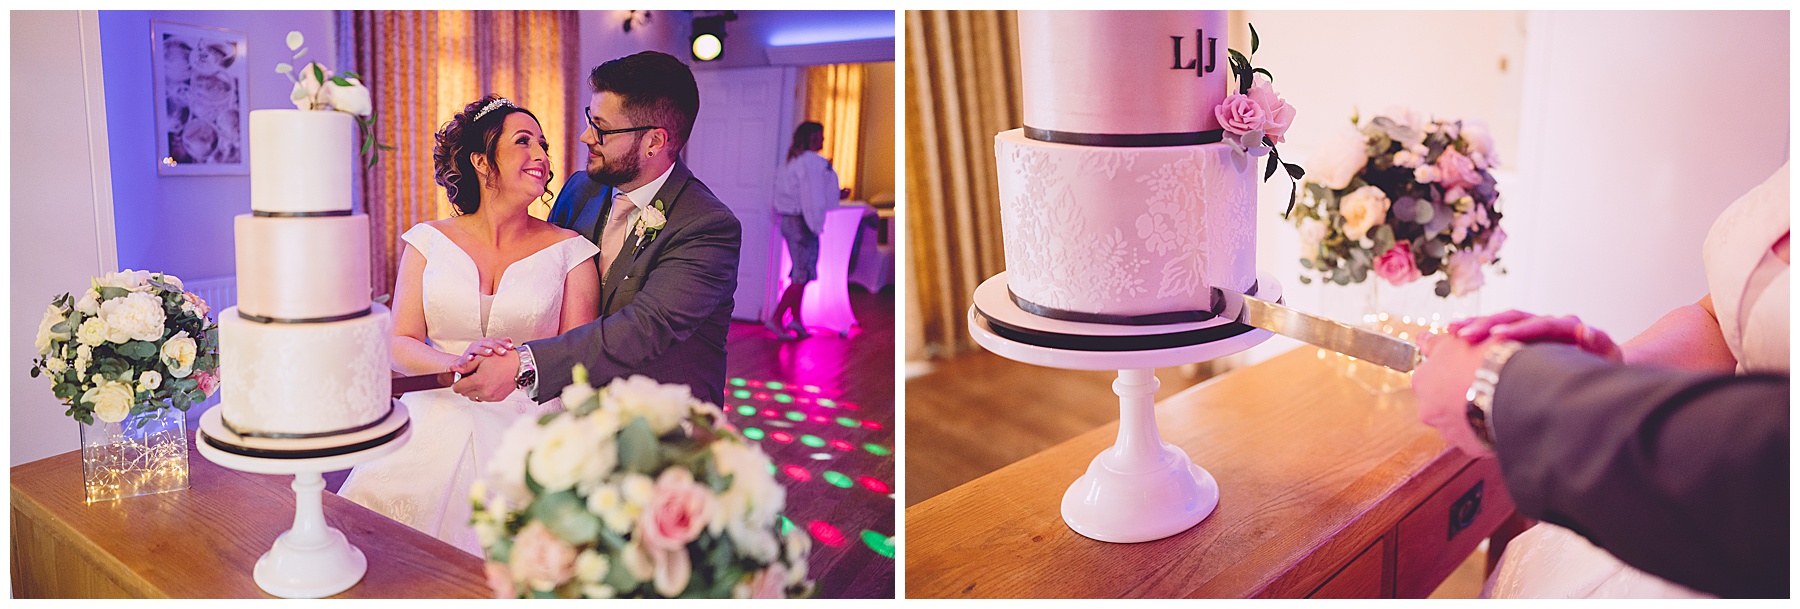 Bride & Groom Cutting Wedding Cake